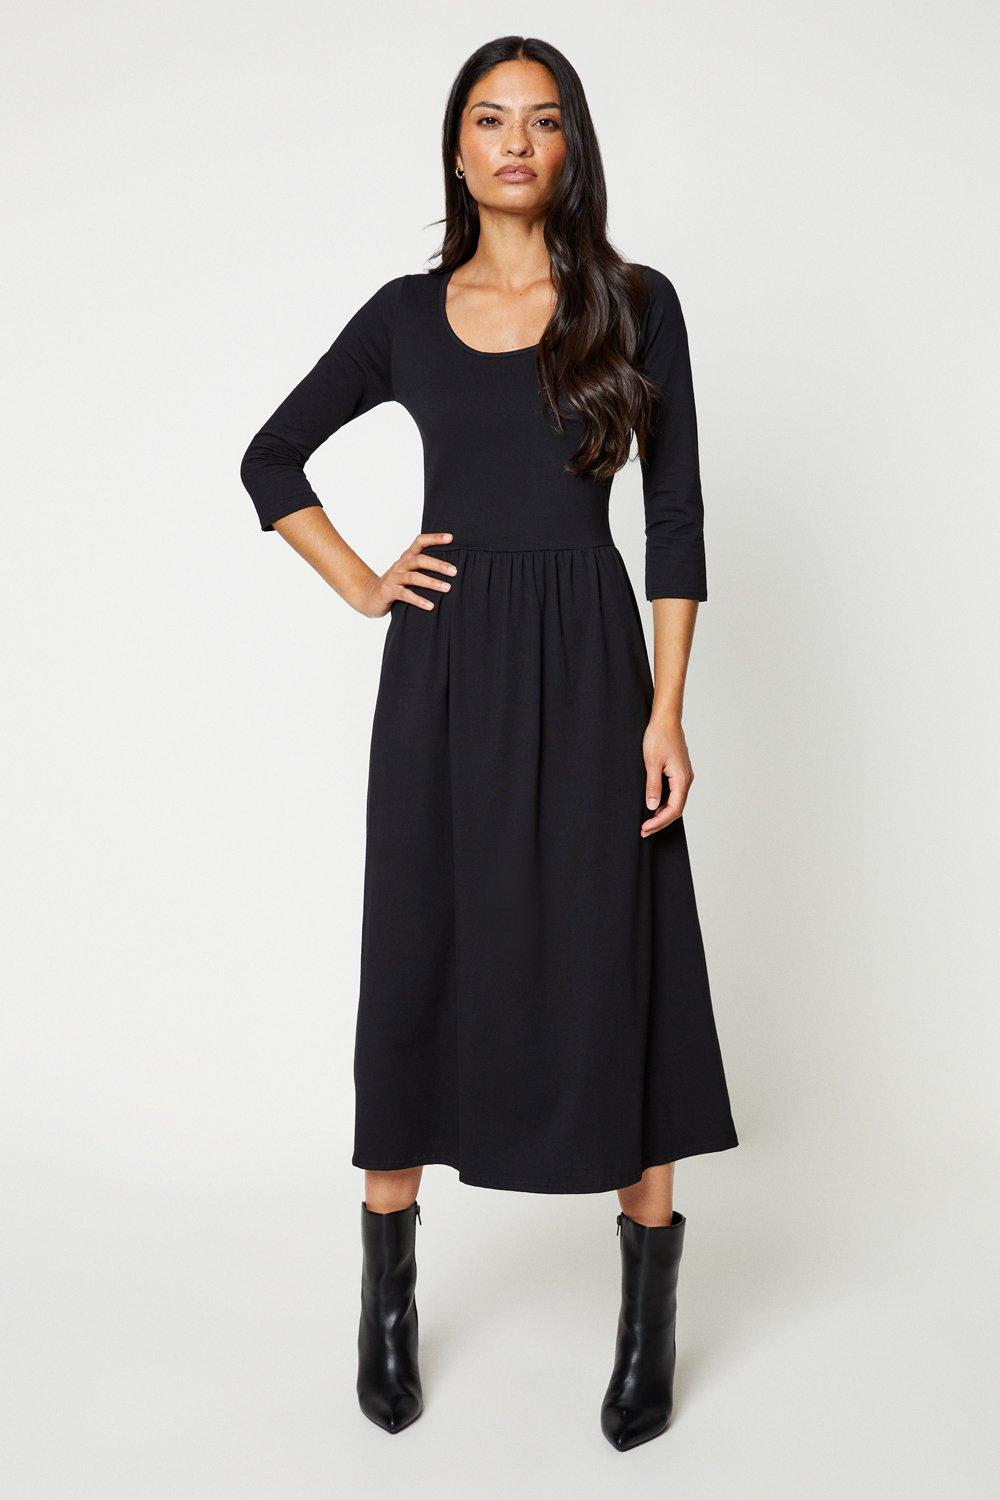 Women’s Scoop Neck 3/4 Sleeve Midi Dress - black - 10